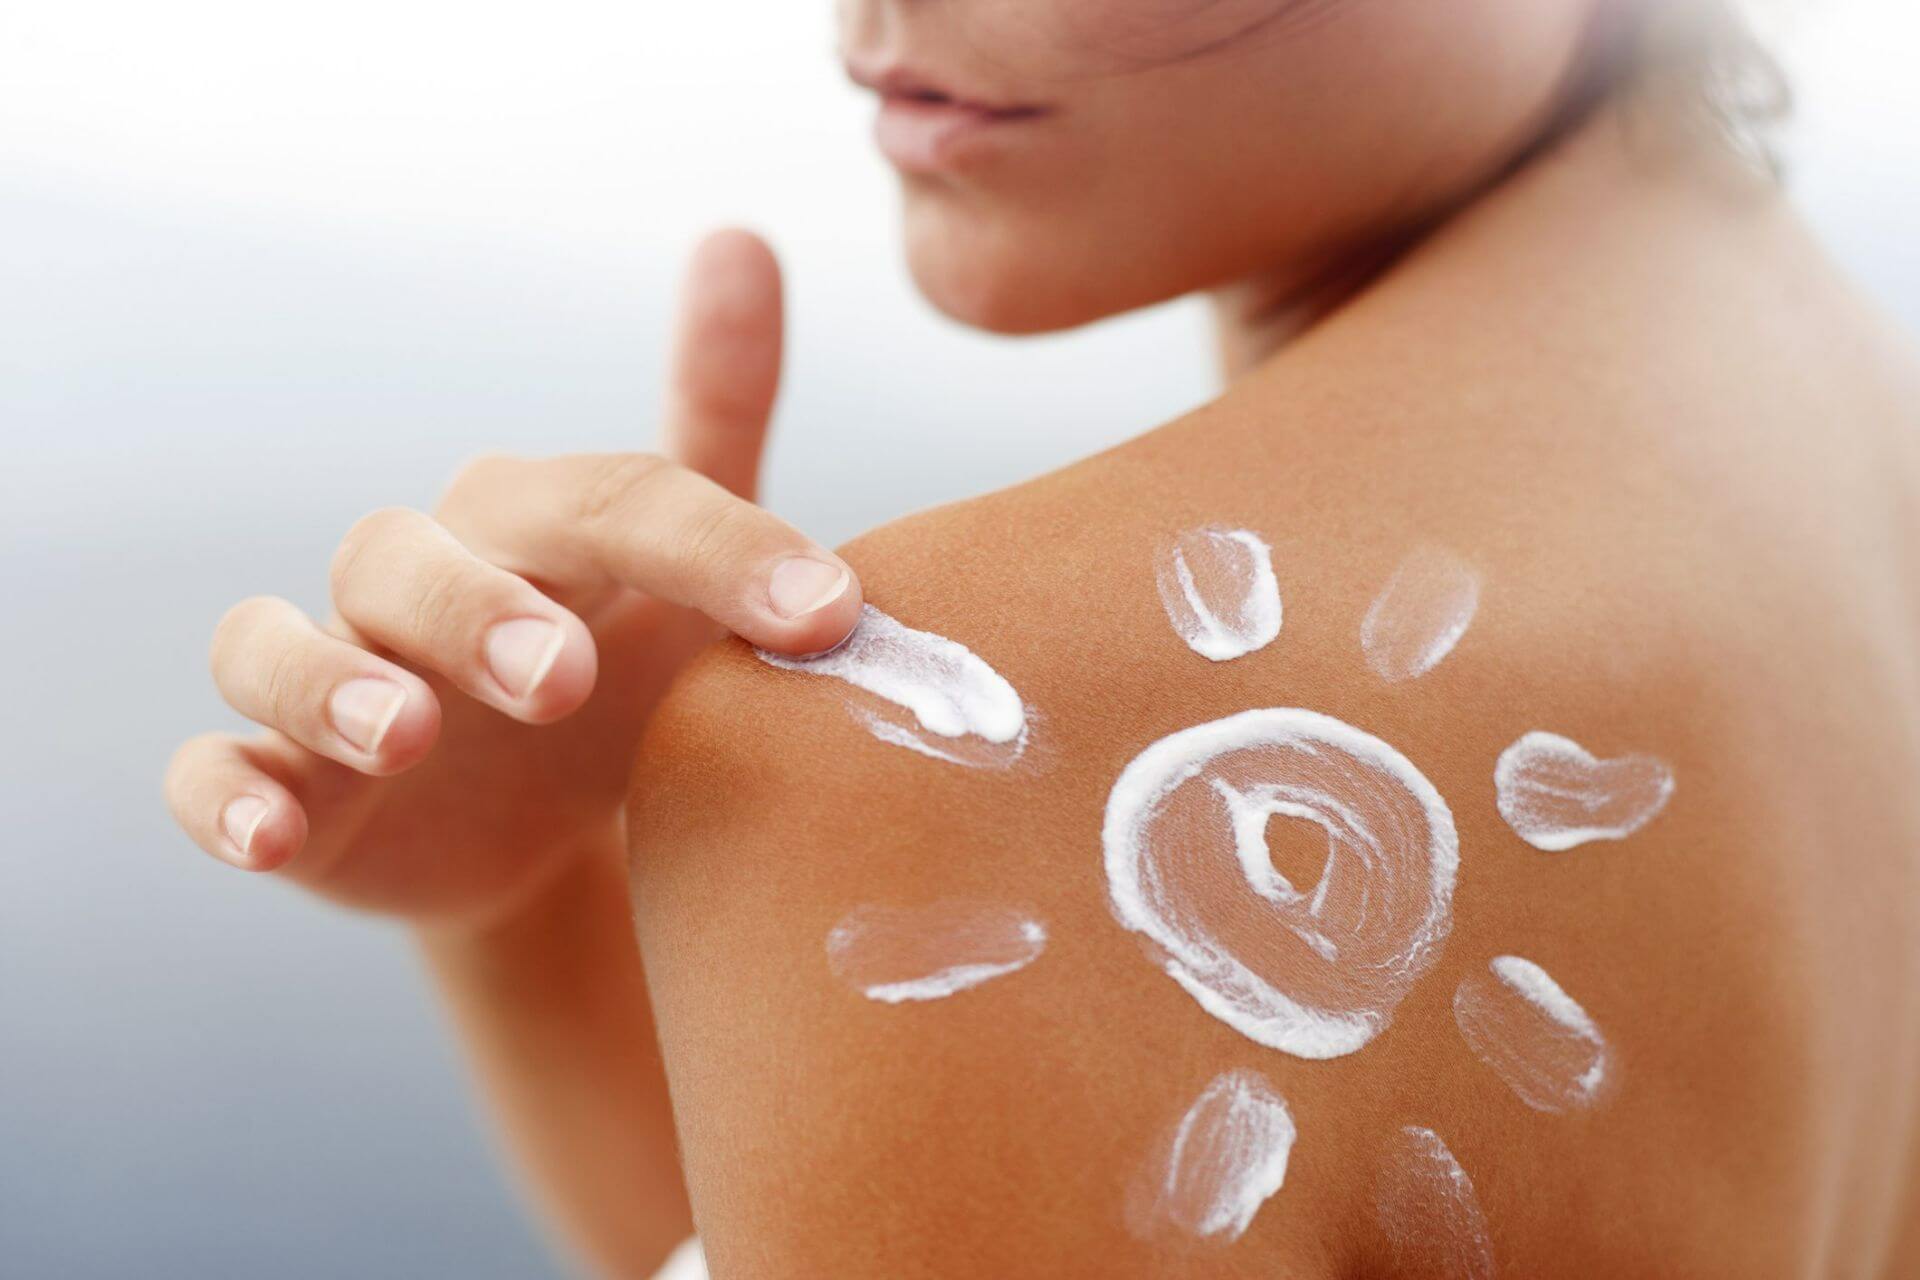 Top 10 tips for treating sunburn